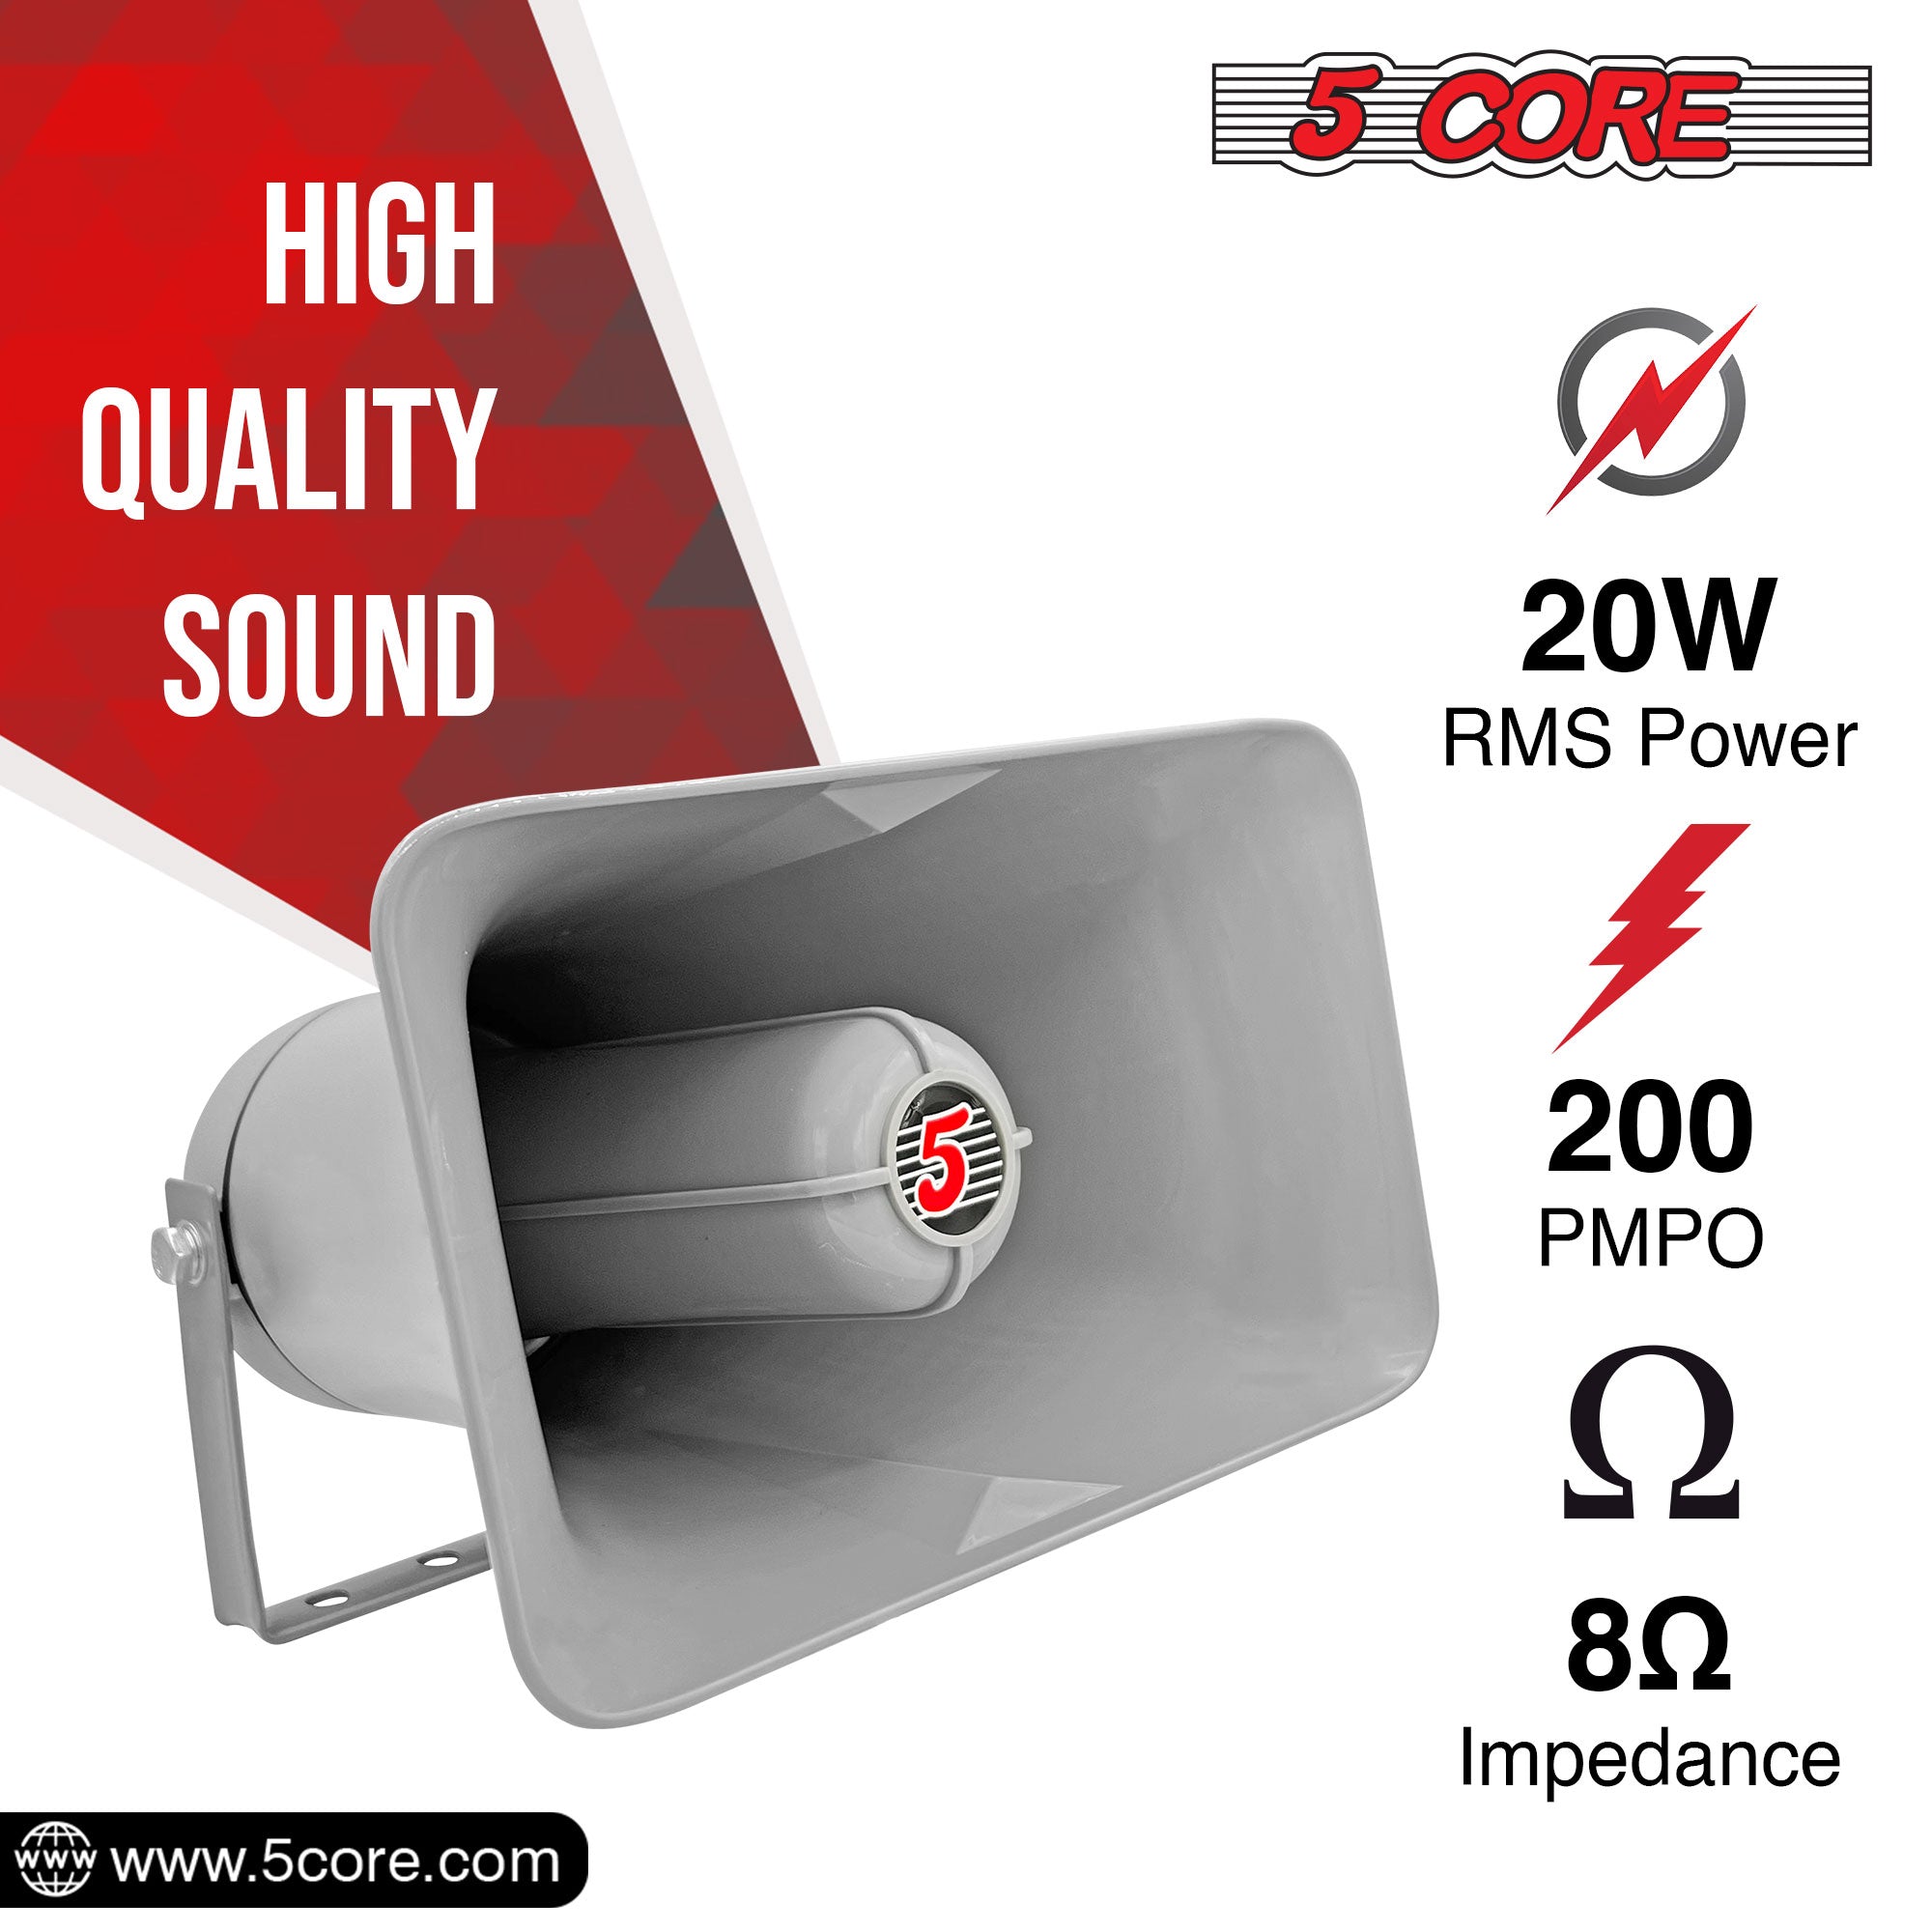  20 Watt RMS Loud Sound Driver Horns